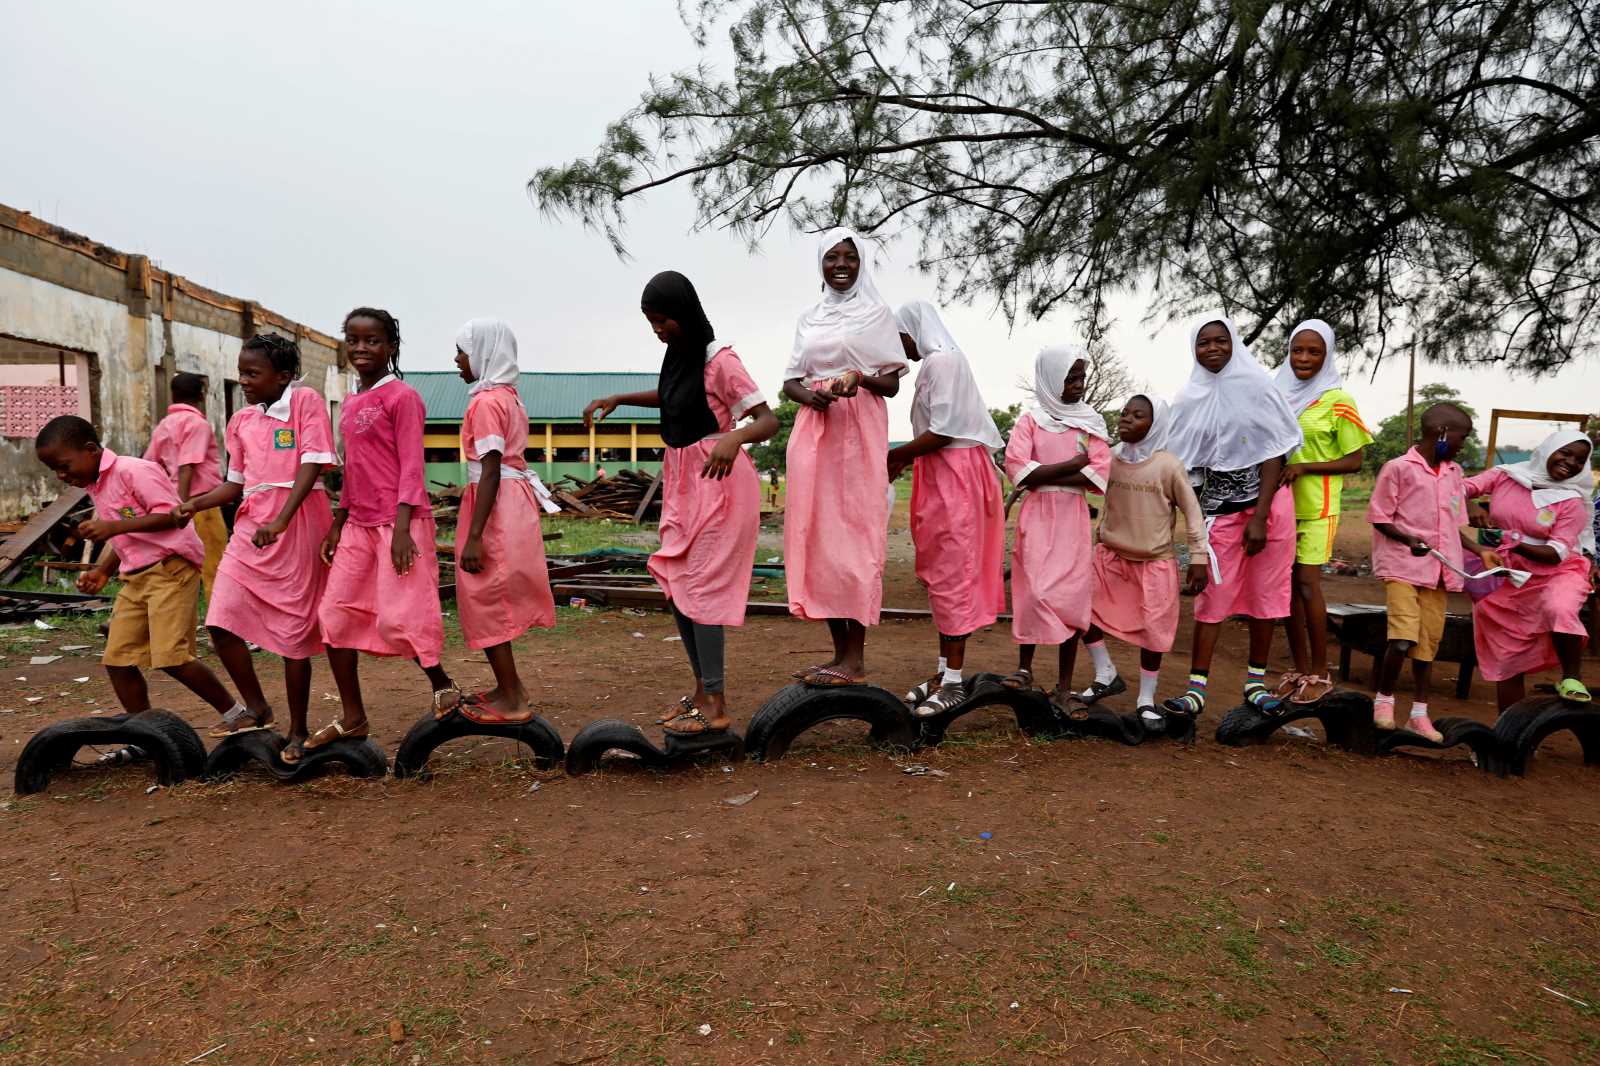 Kids on the playground of a public grammar school in Kwara state. 